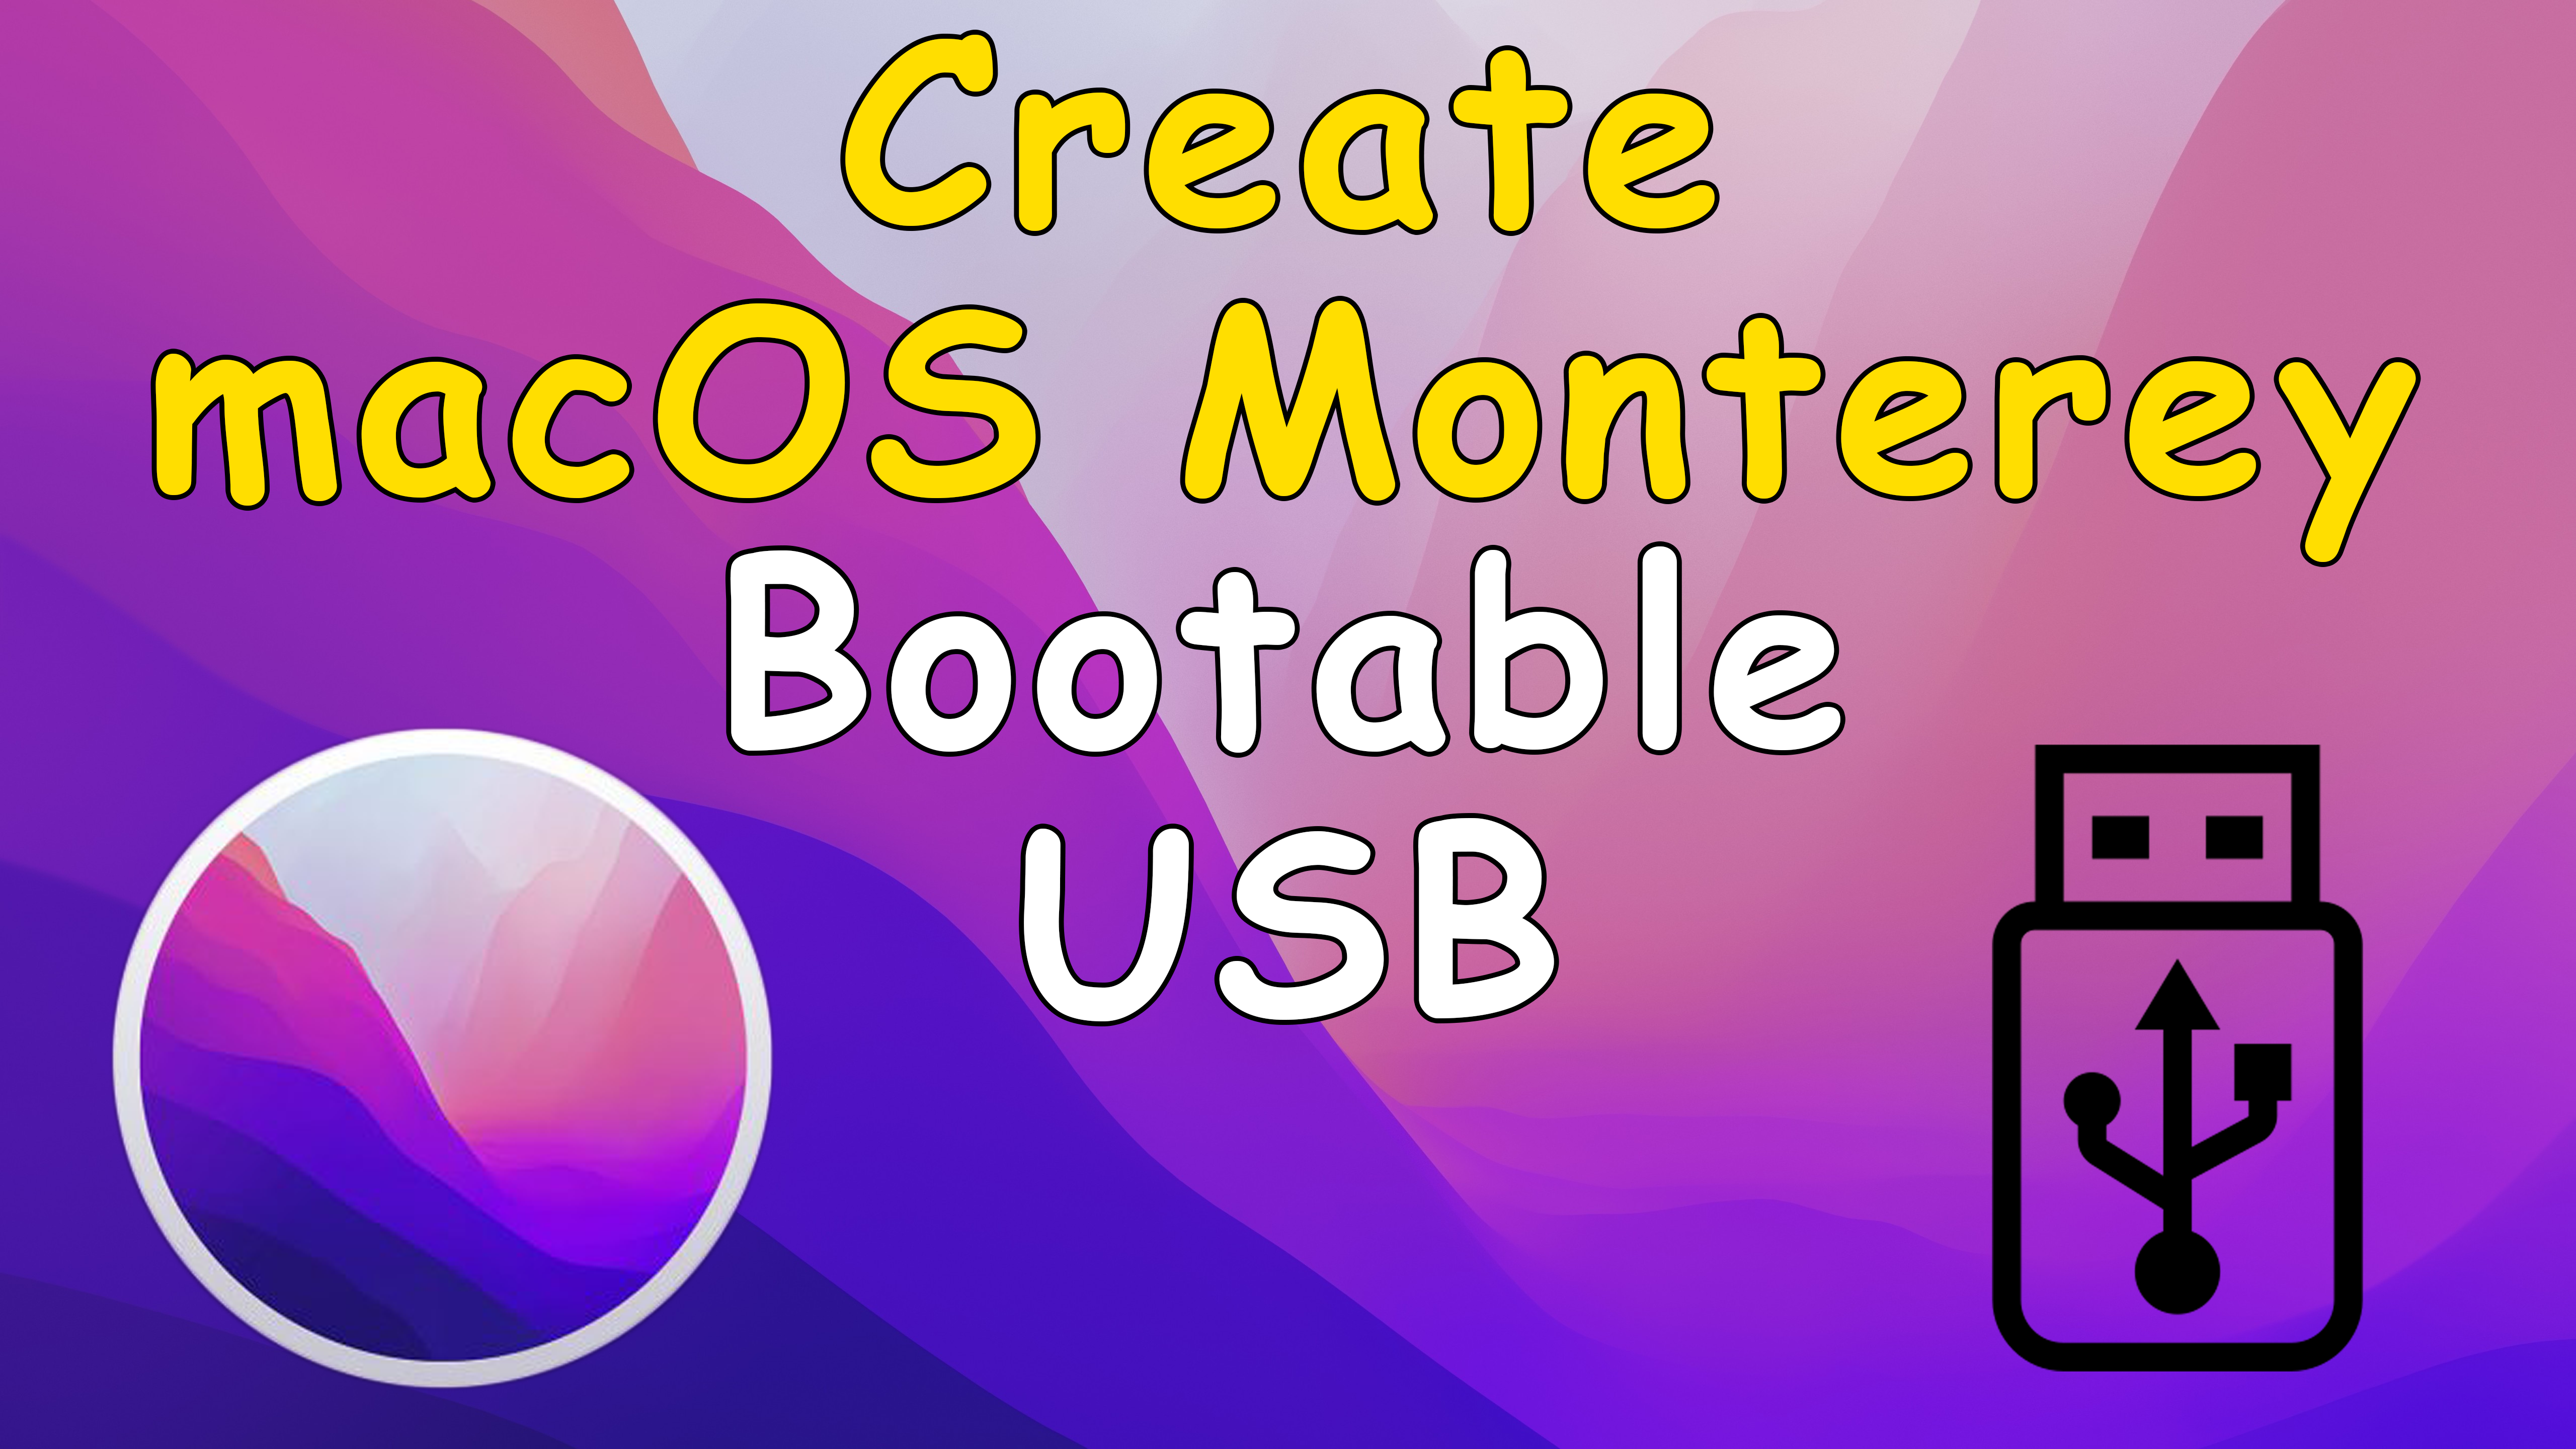 Как создать загрузочный USB-накопитель macOS Monterey с помощью терминала